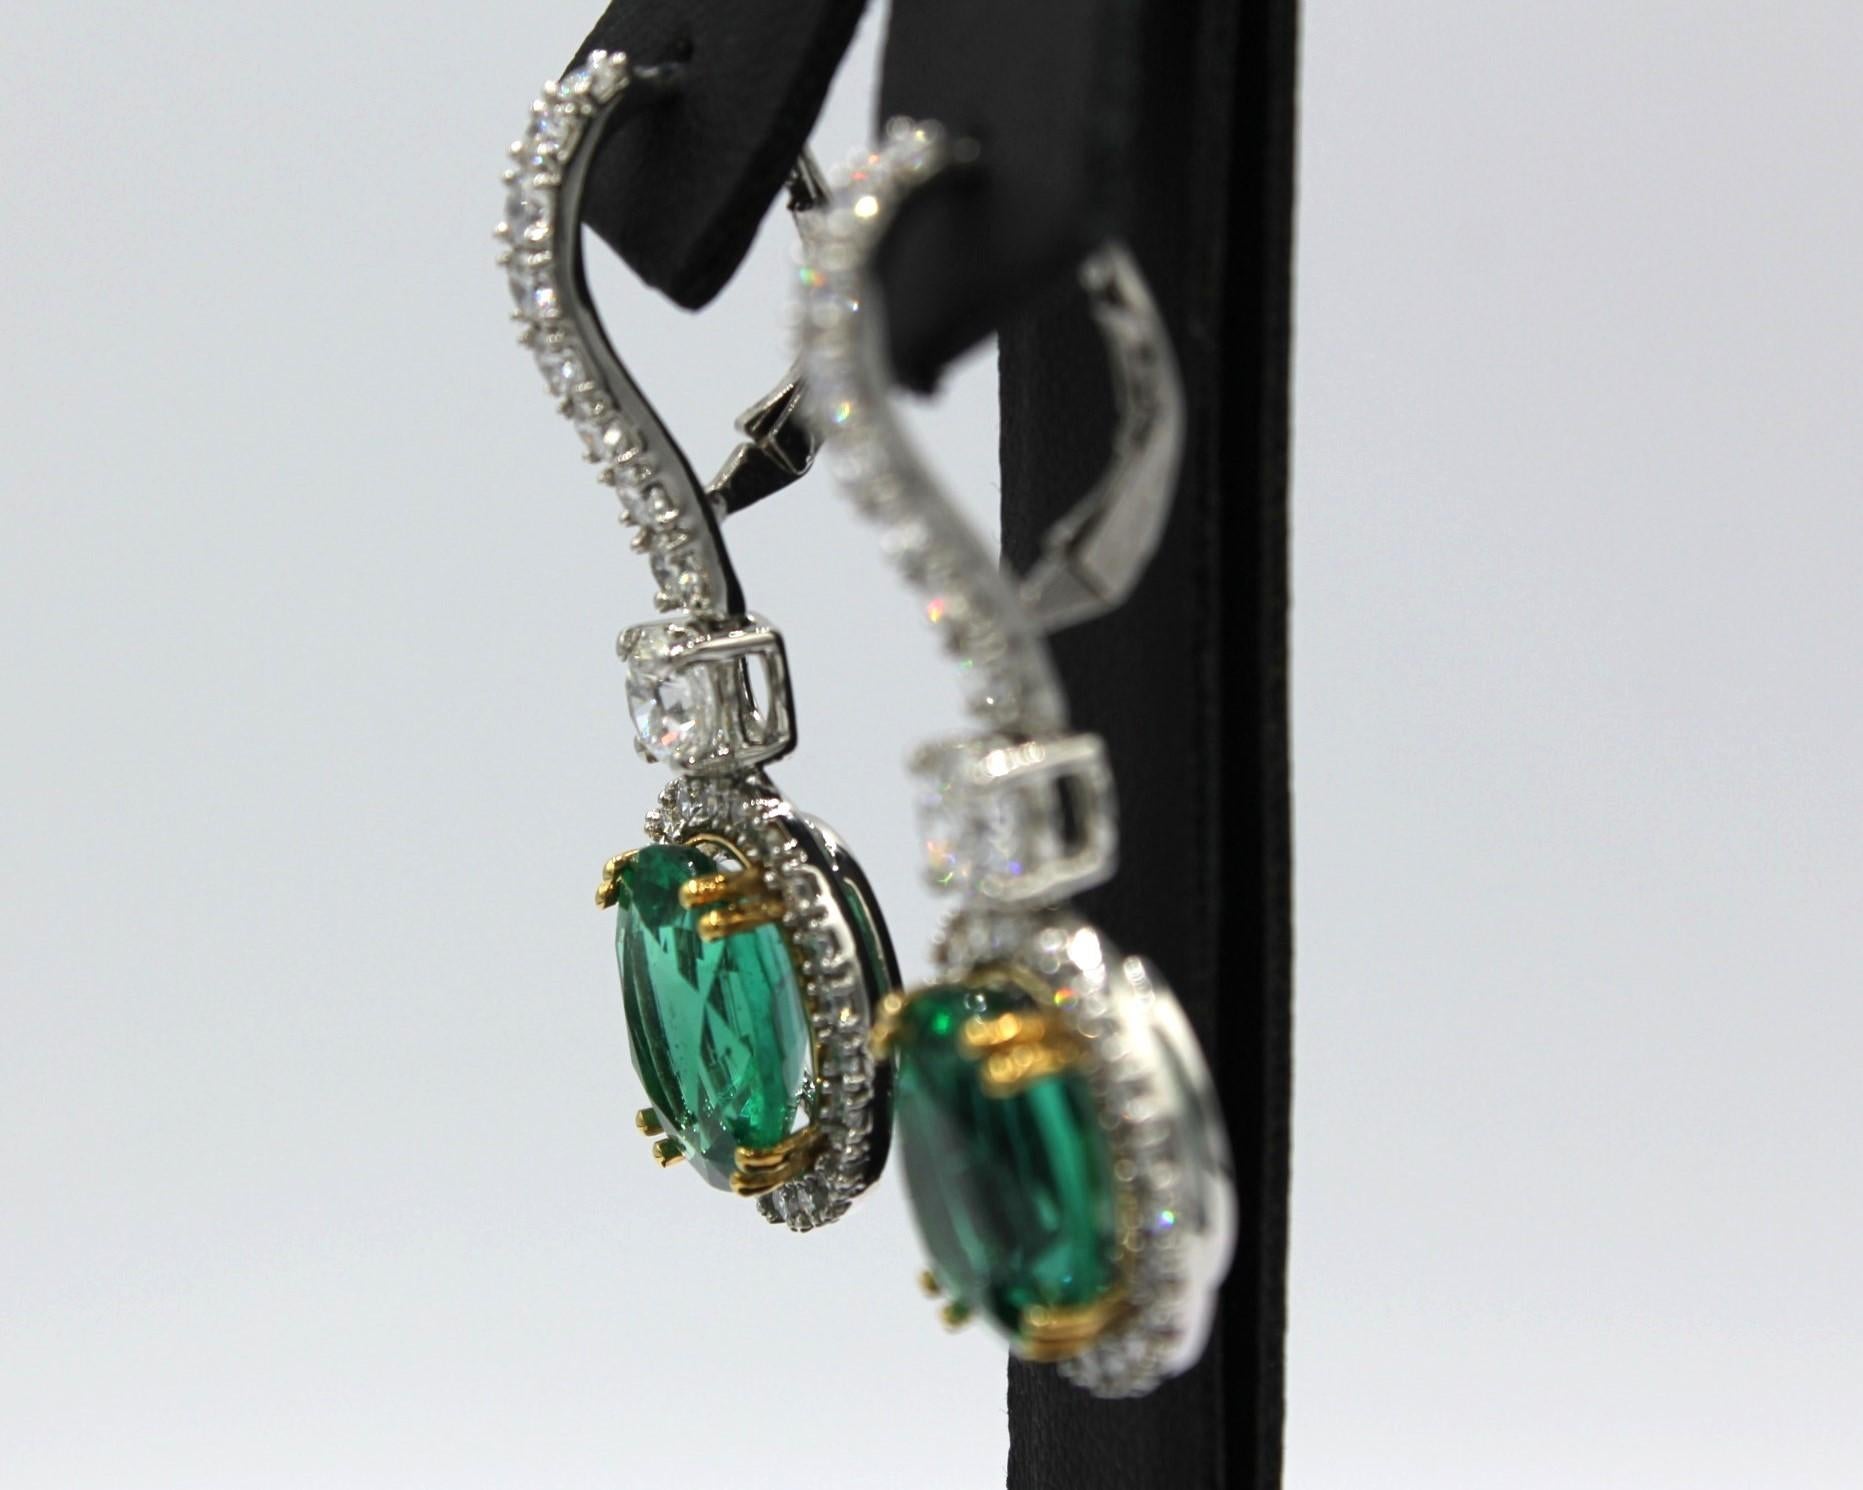 8,44 Karat Gepaarte ovale sambische Smaragde mit zweiundsechzig runden Diamanten mit einem Gesamtgewicht von 2,83 Karat. 

Dieser Smaragd-Diamant-Ohrring wird Ihre Eleganz und Einzigartigkeit unterstreichen. 

Artikel-Details:
- Typ: Ohrring
-